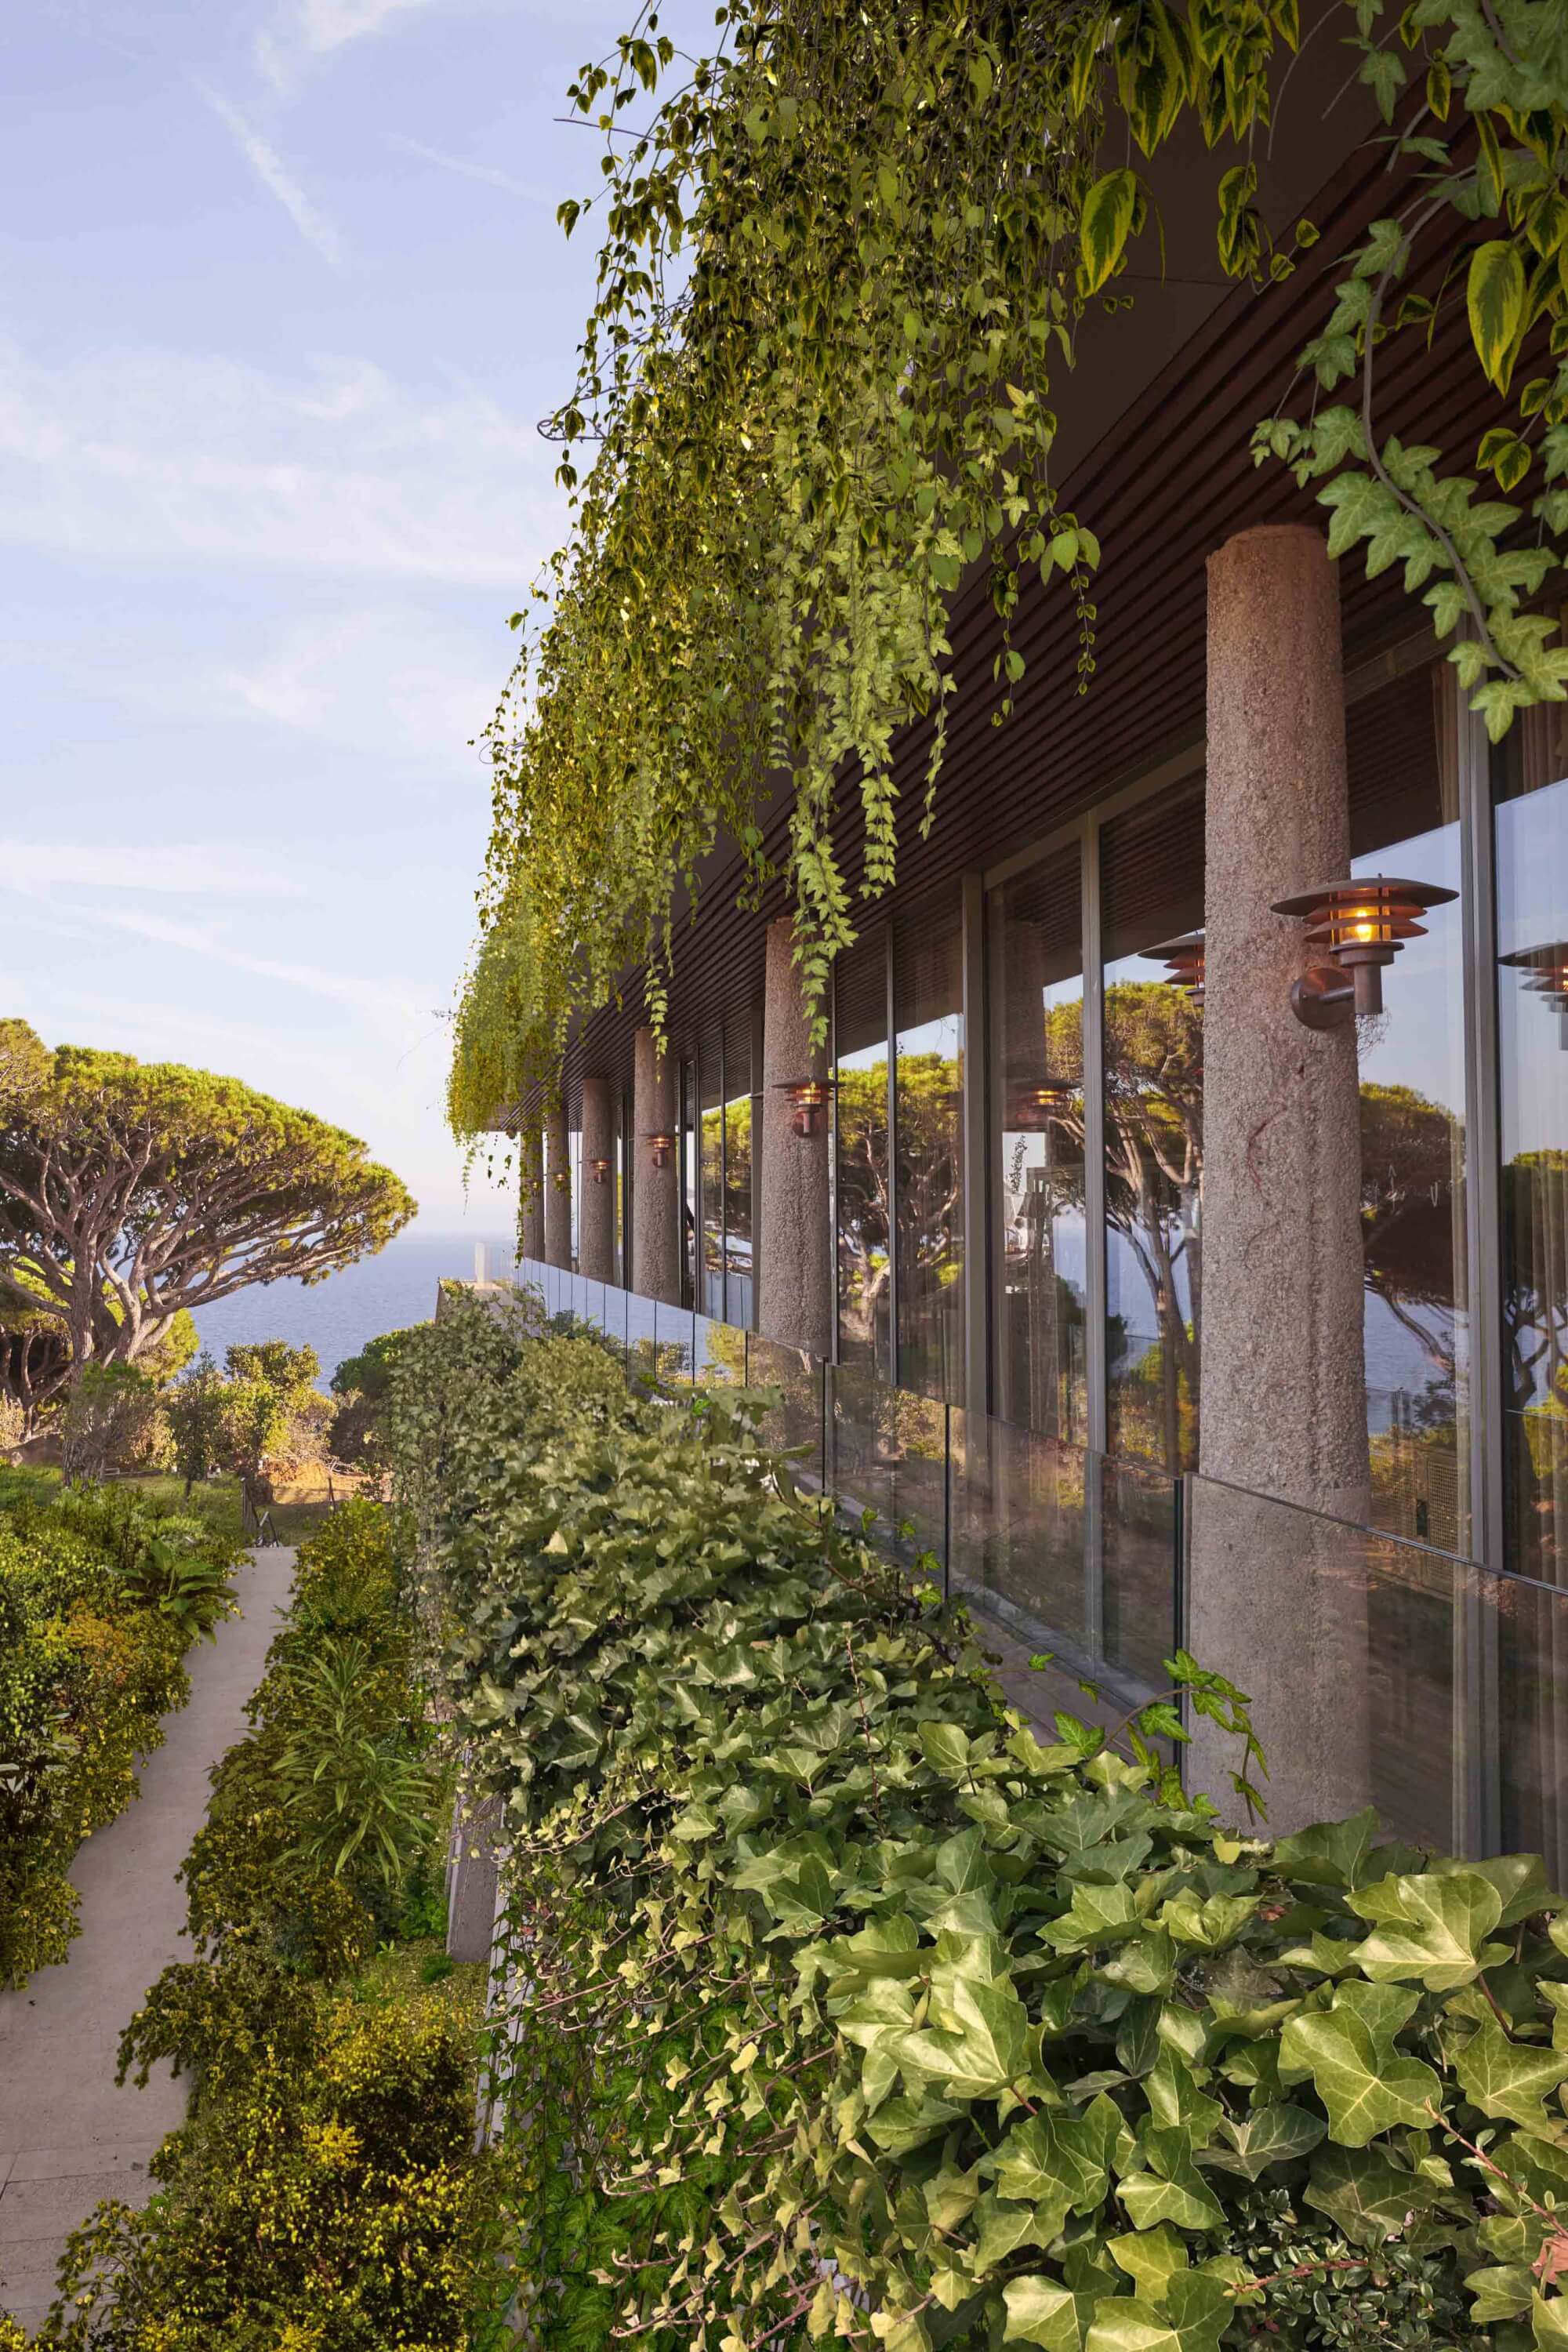  Lily of the Valley sur la French Riviera, le nouvel hôtel imaginé par Philippe Starck